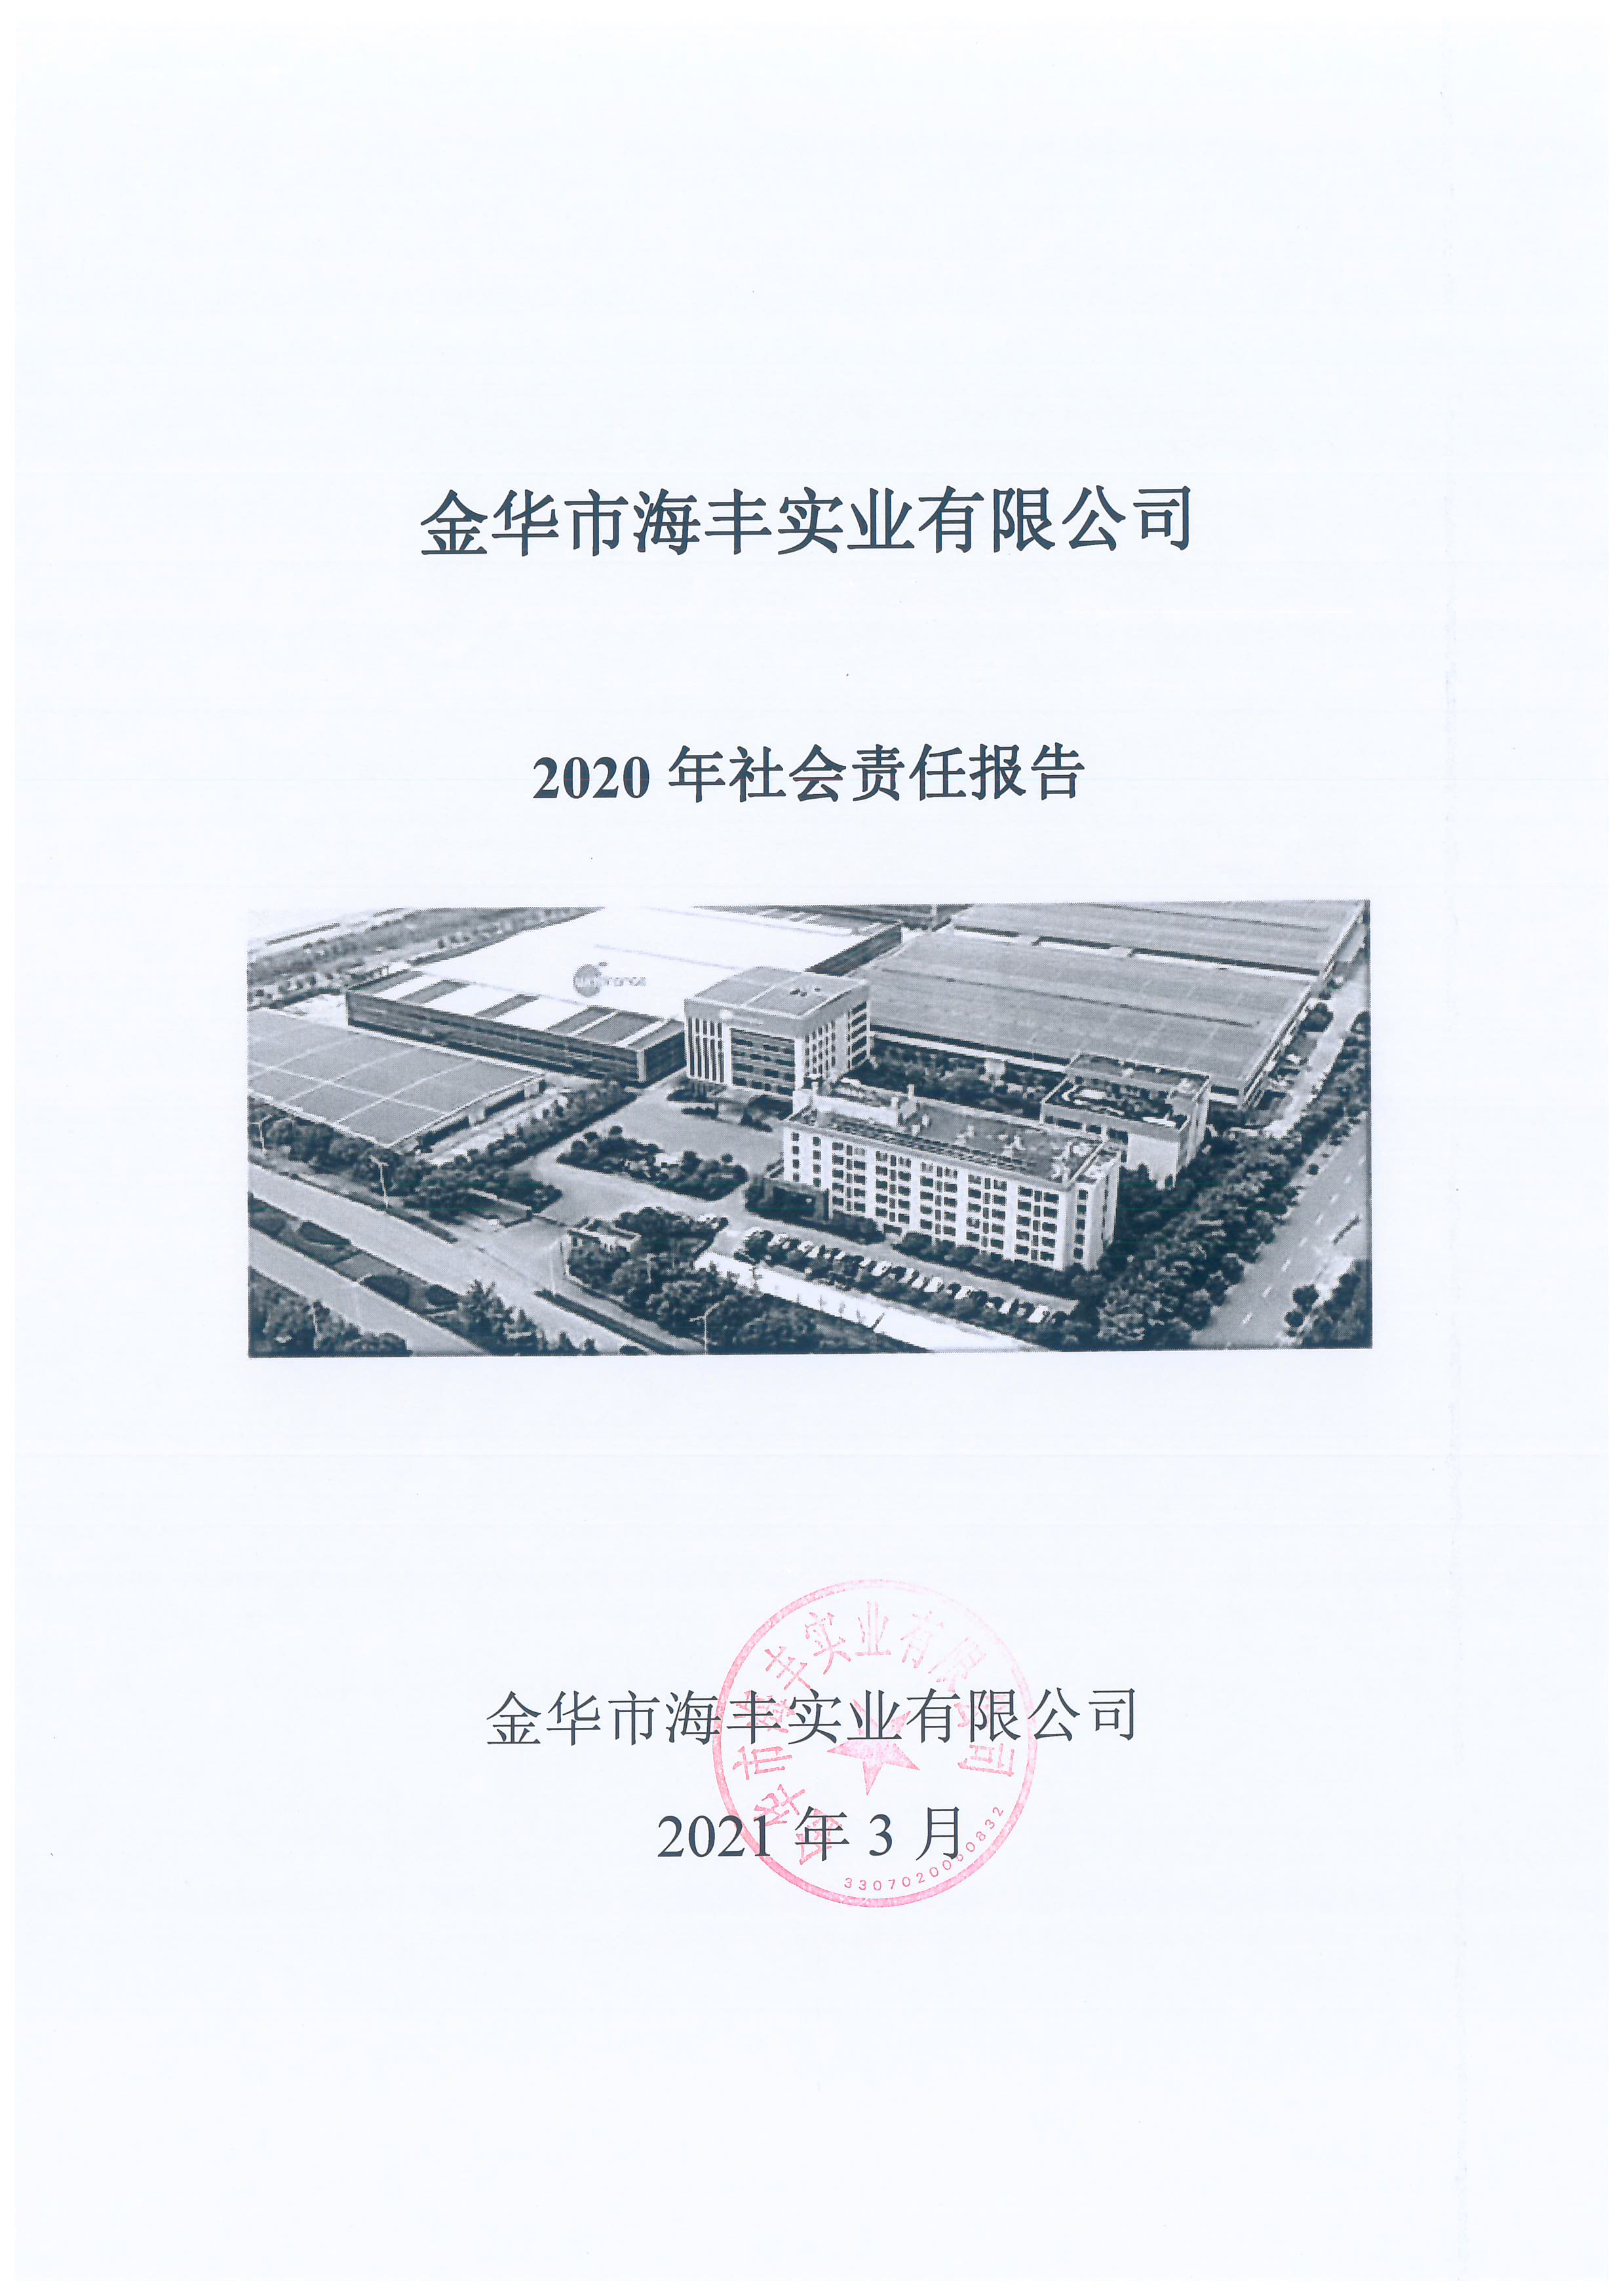 海丰2020年社会责任报告